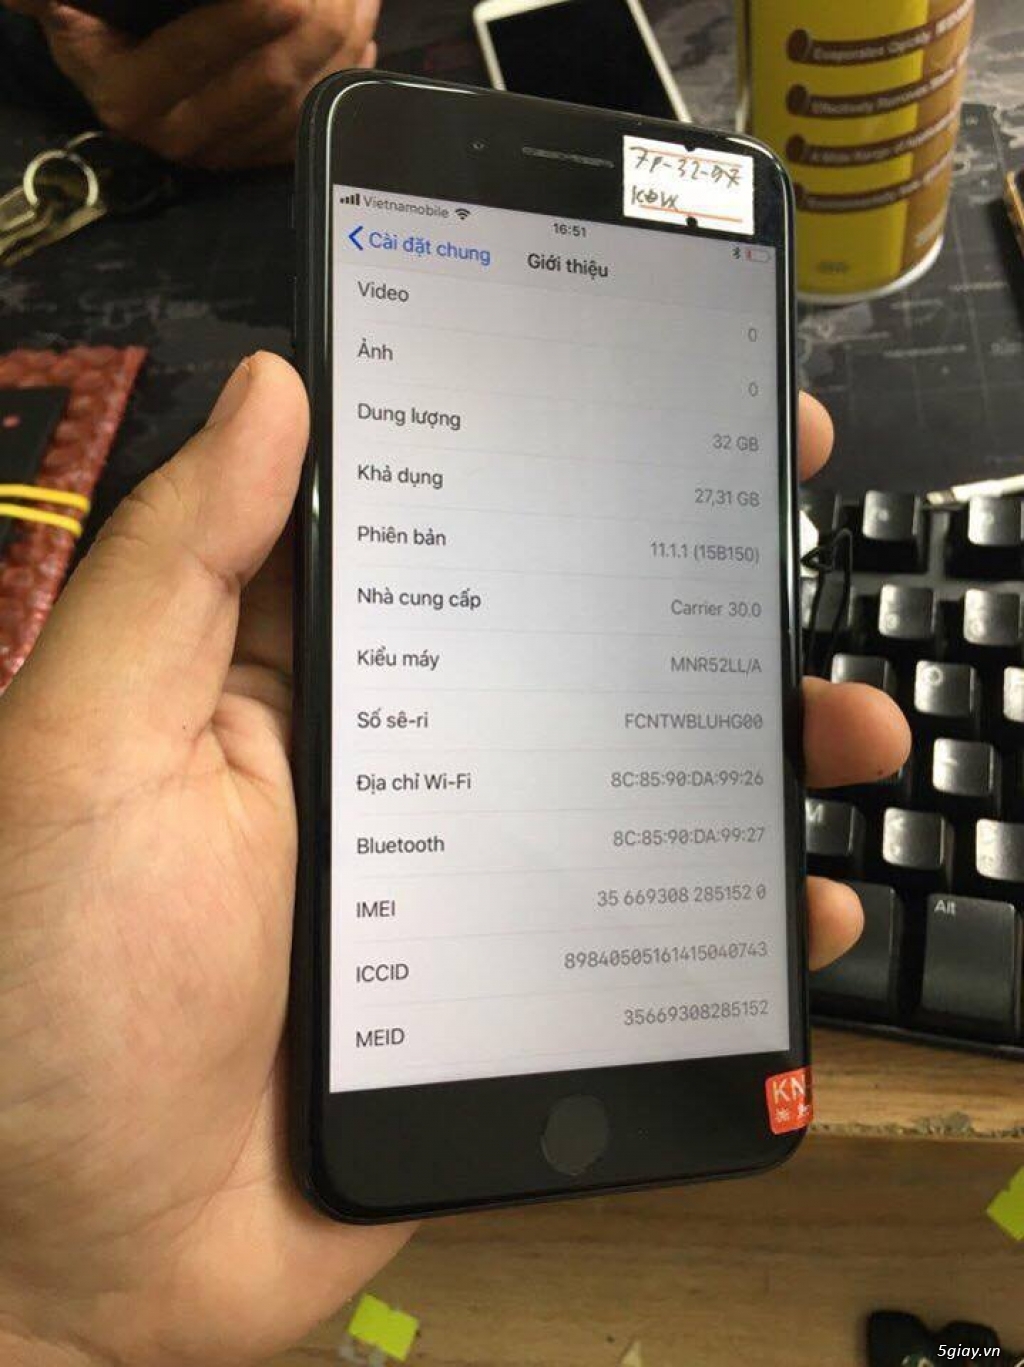 Bán iphone 7plus đen nhám zin keng tại hcm